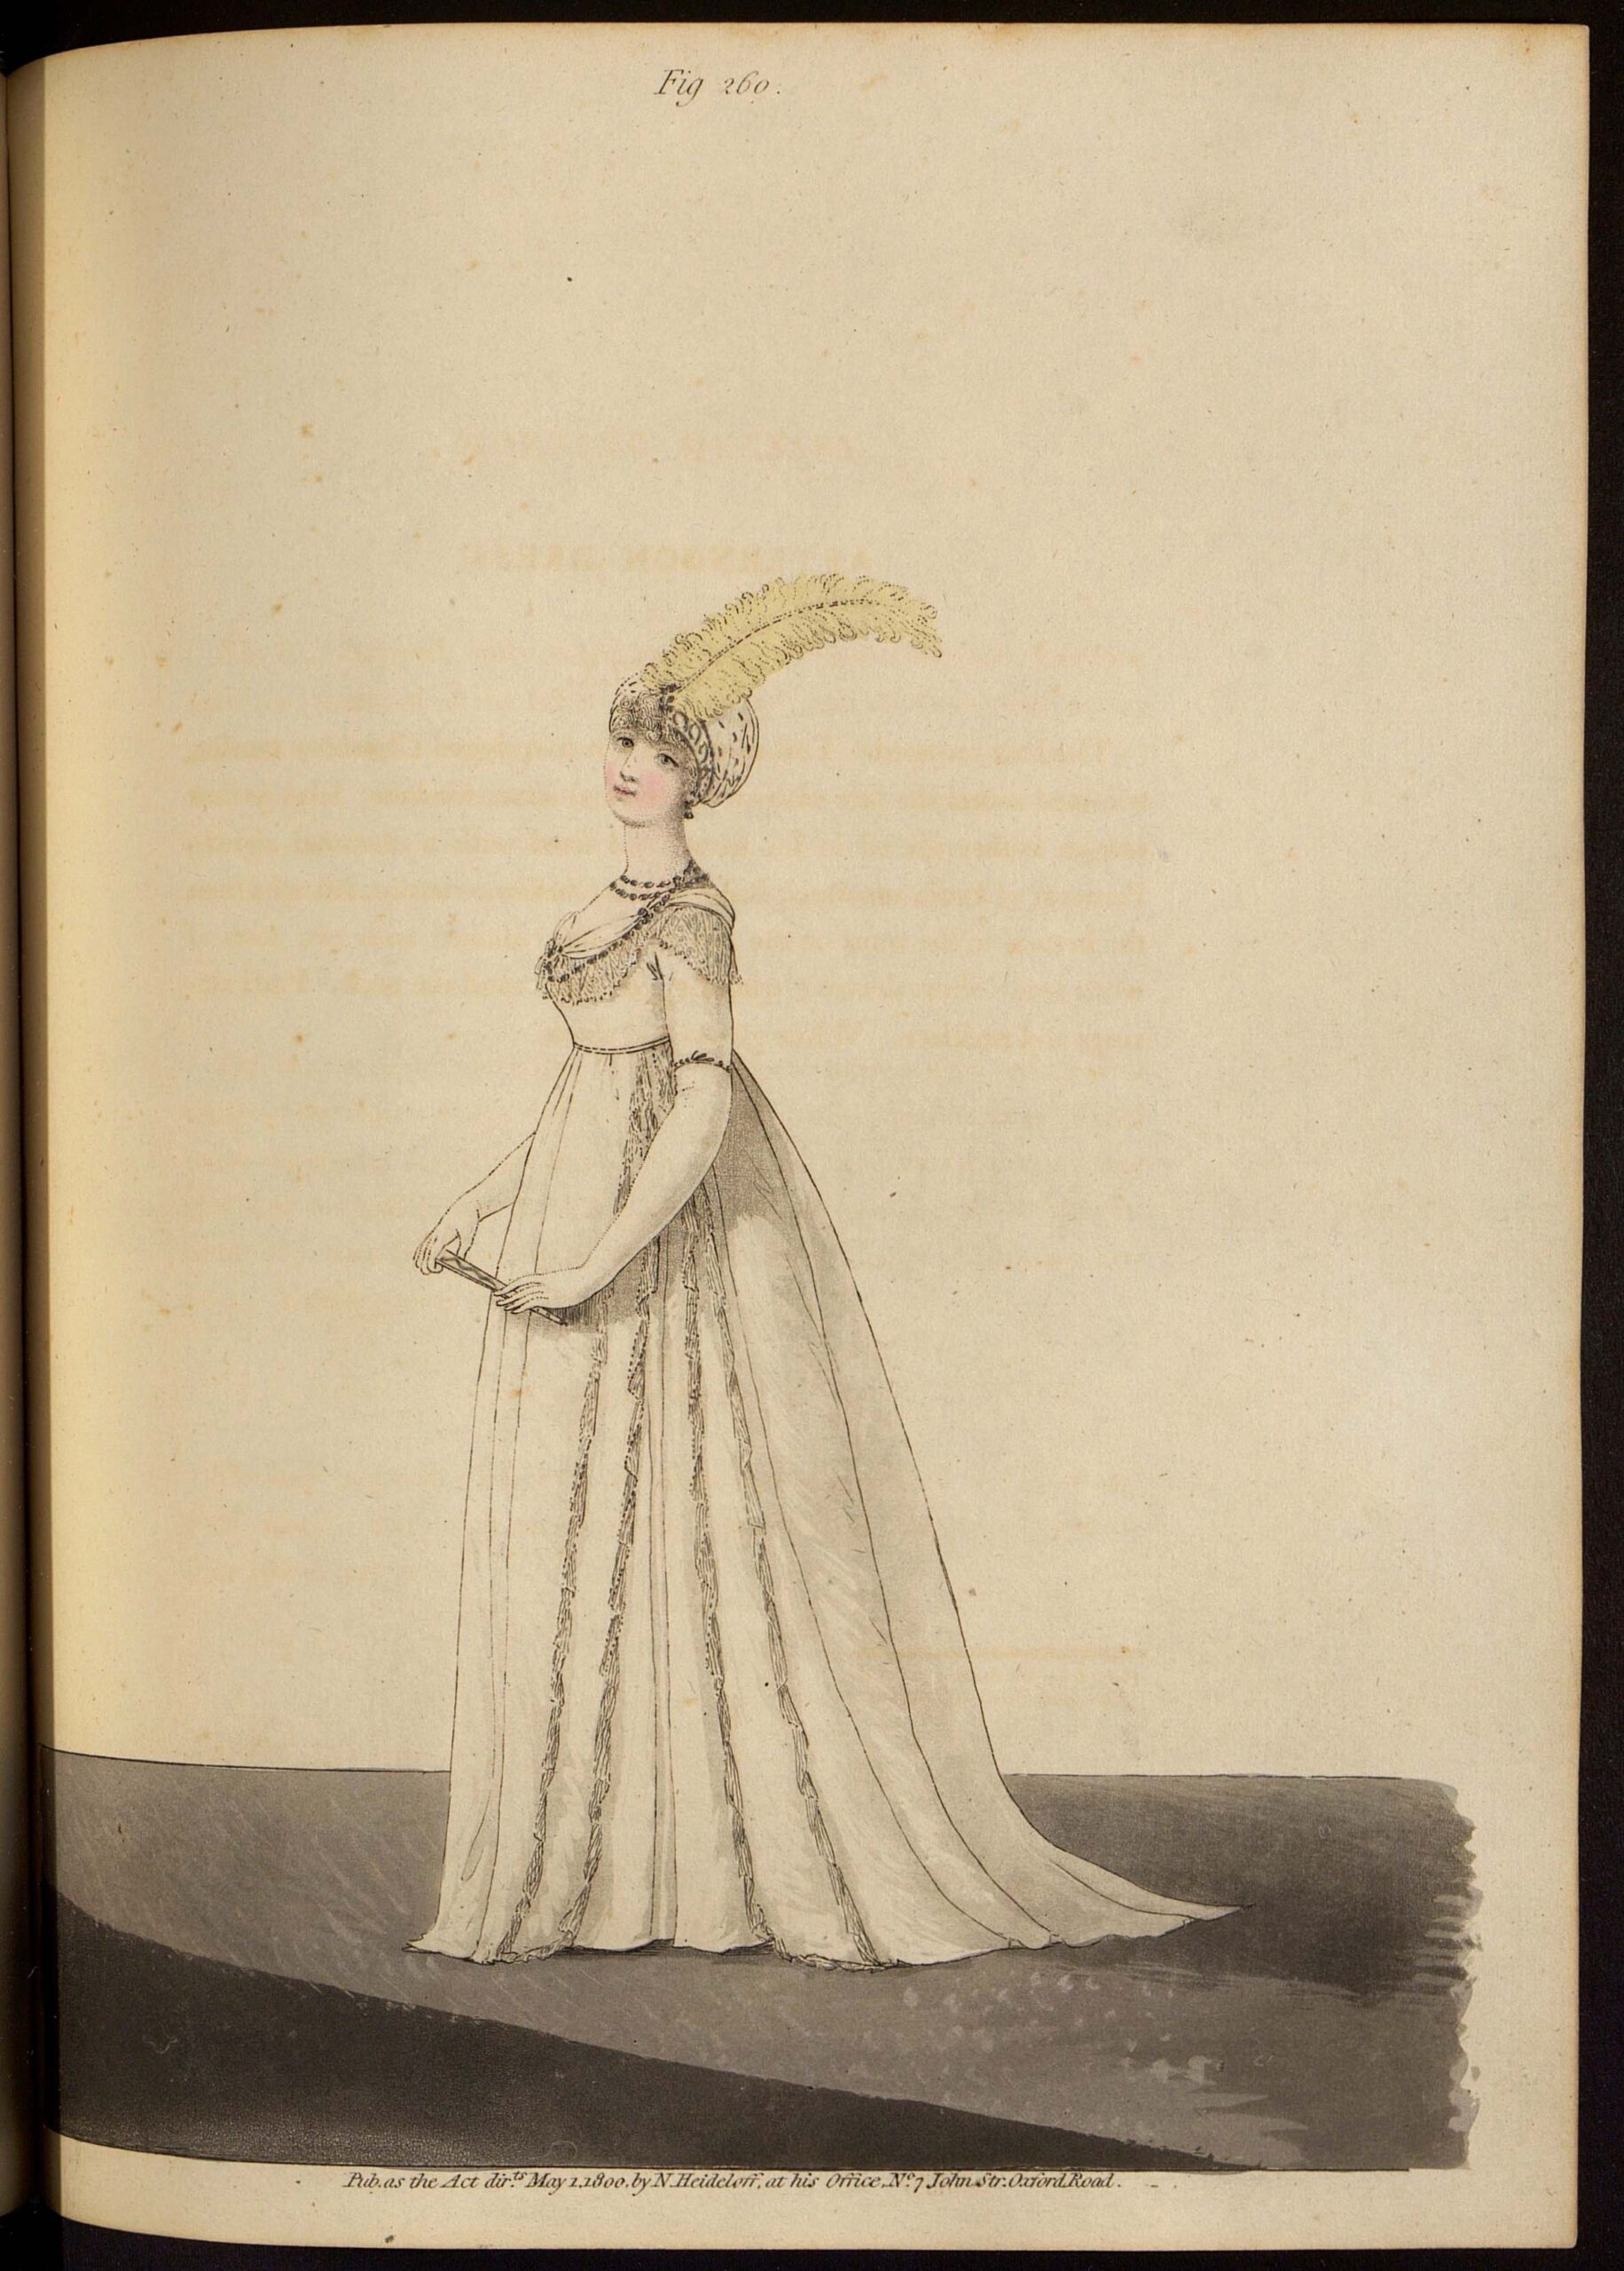 Дневное платье. Лист из журнала «Gallery of fashion»Великобритания, 1800 г.